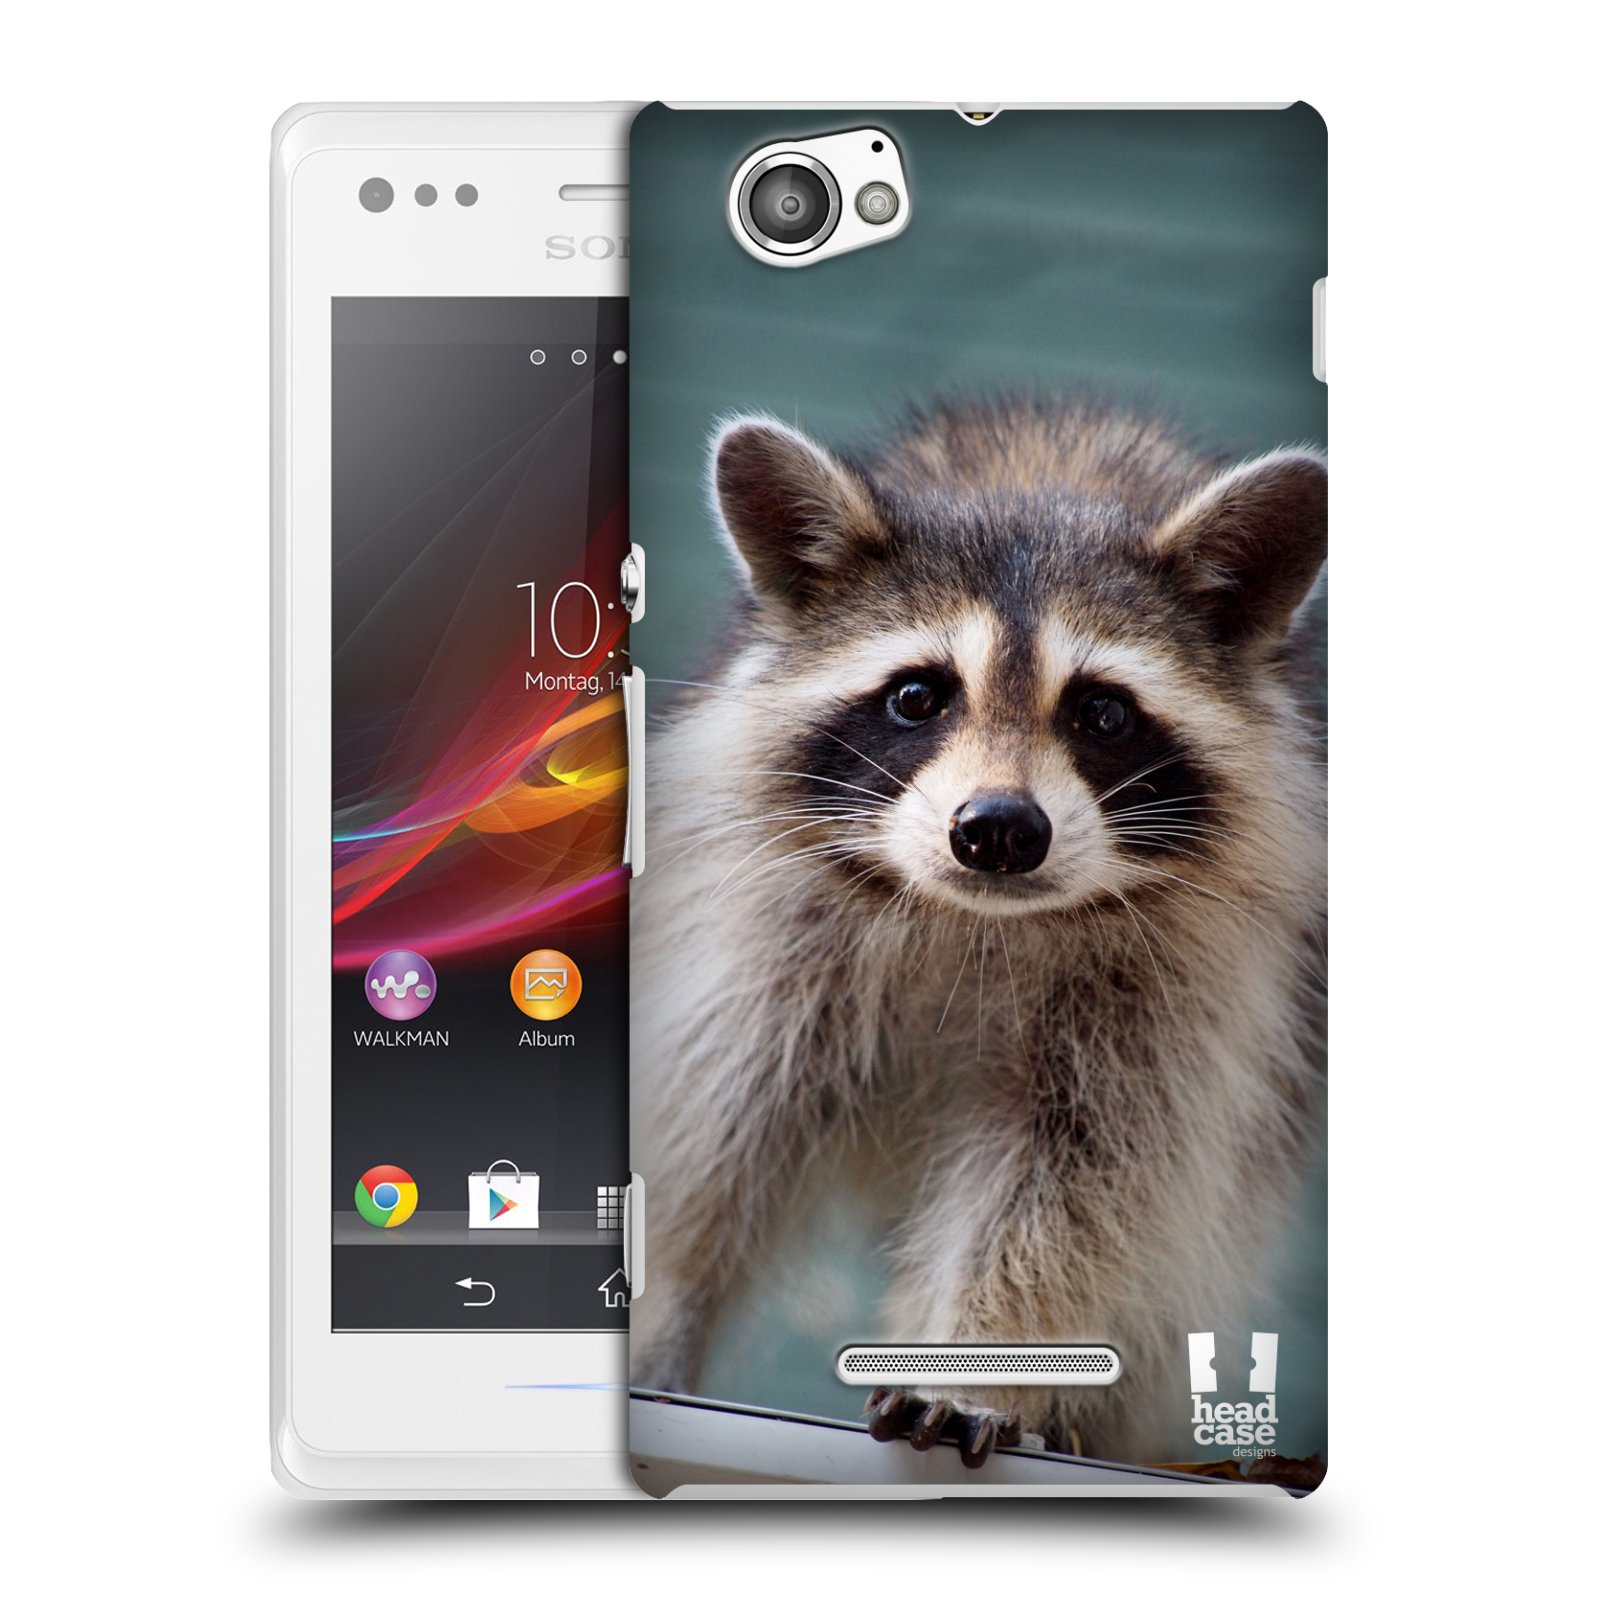 HEAD CASE plastový obal na mobil Sony Xperia M vzor slavná zvířata foto malý mýval